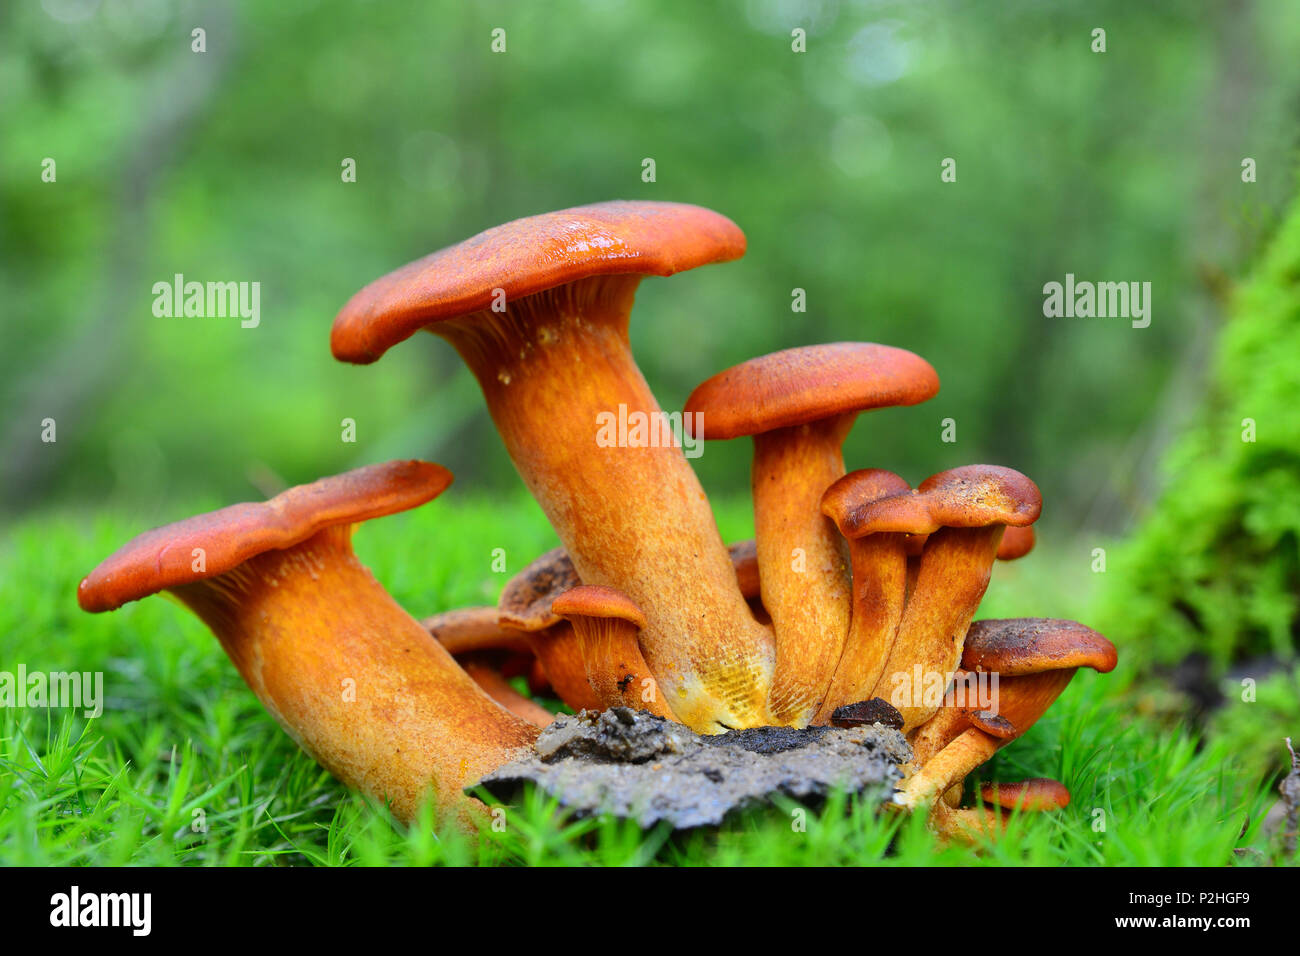 Omphalotus olearius champignons dans la forêt, peut être mortel Banque D'Images